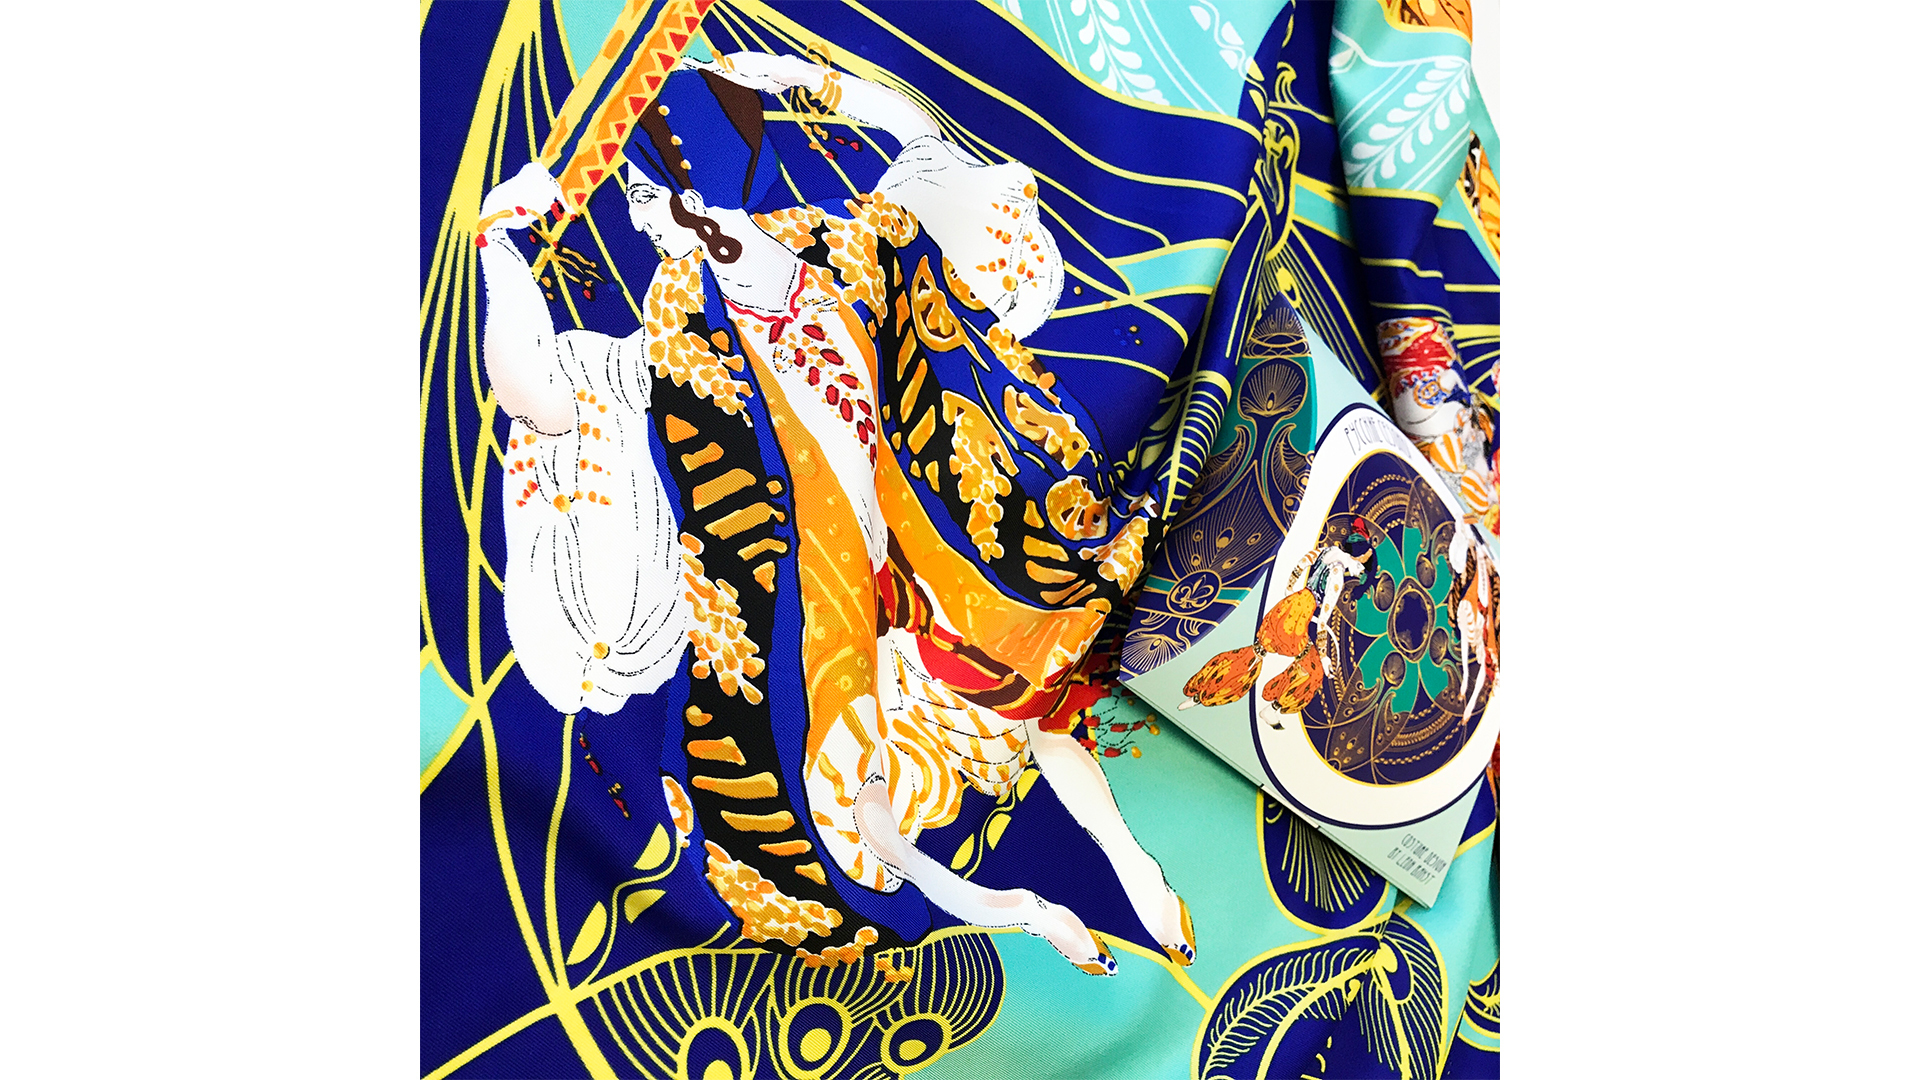 Платок сувенирный Русские в моде Русские сезоны Леон Бакст 90х90см, шелк, вискоза, машинная подшивка